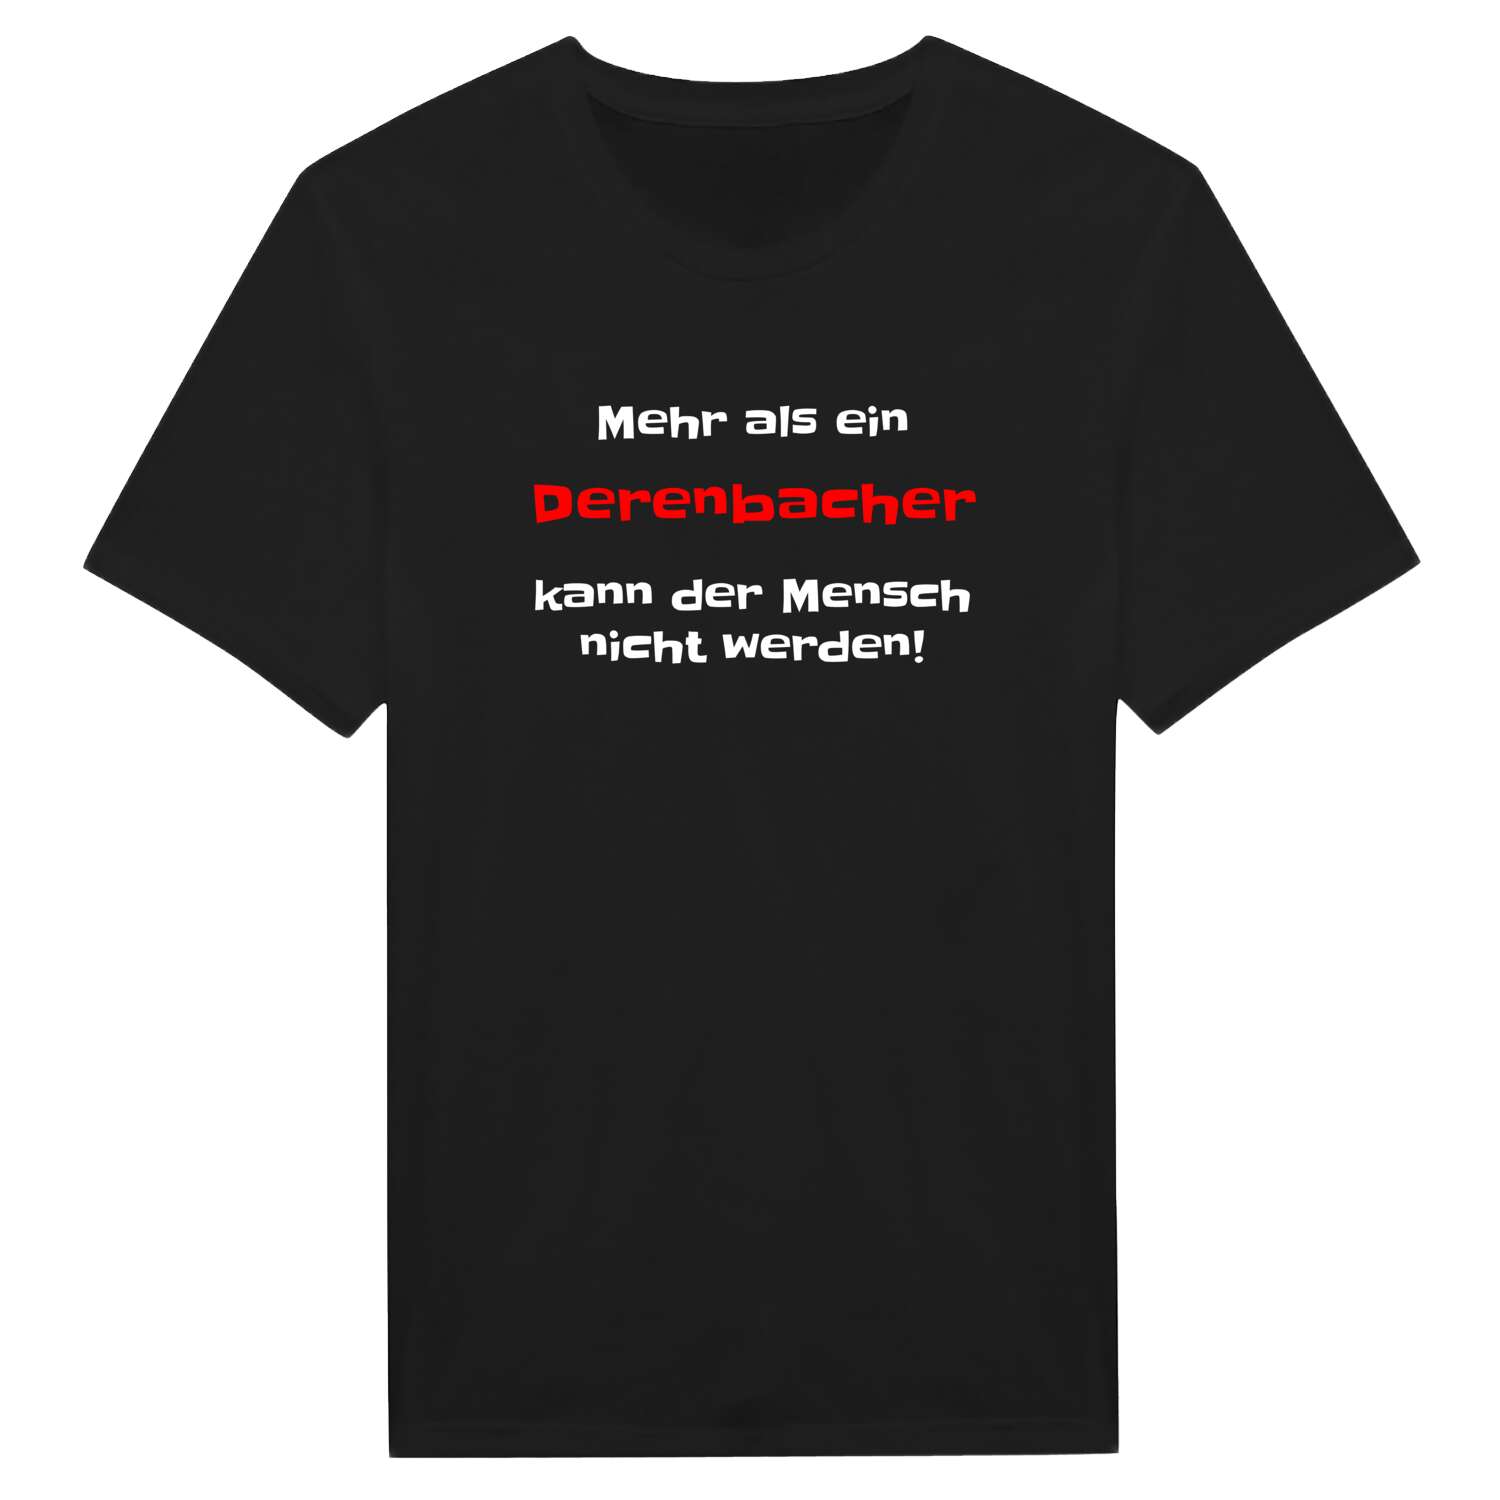 Derenbach T-Shirt »Mehr als ein«